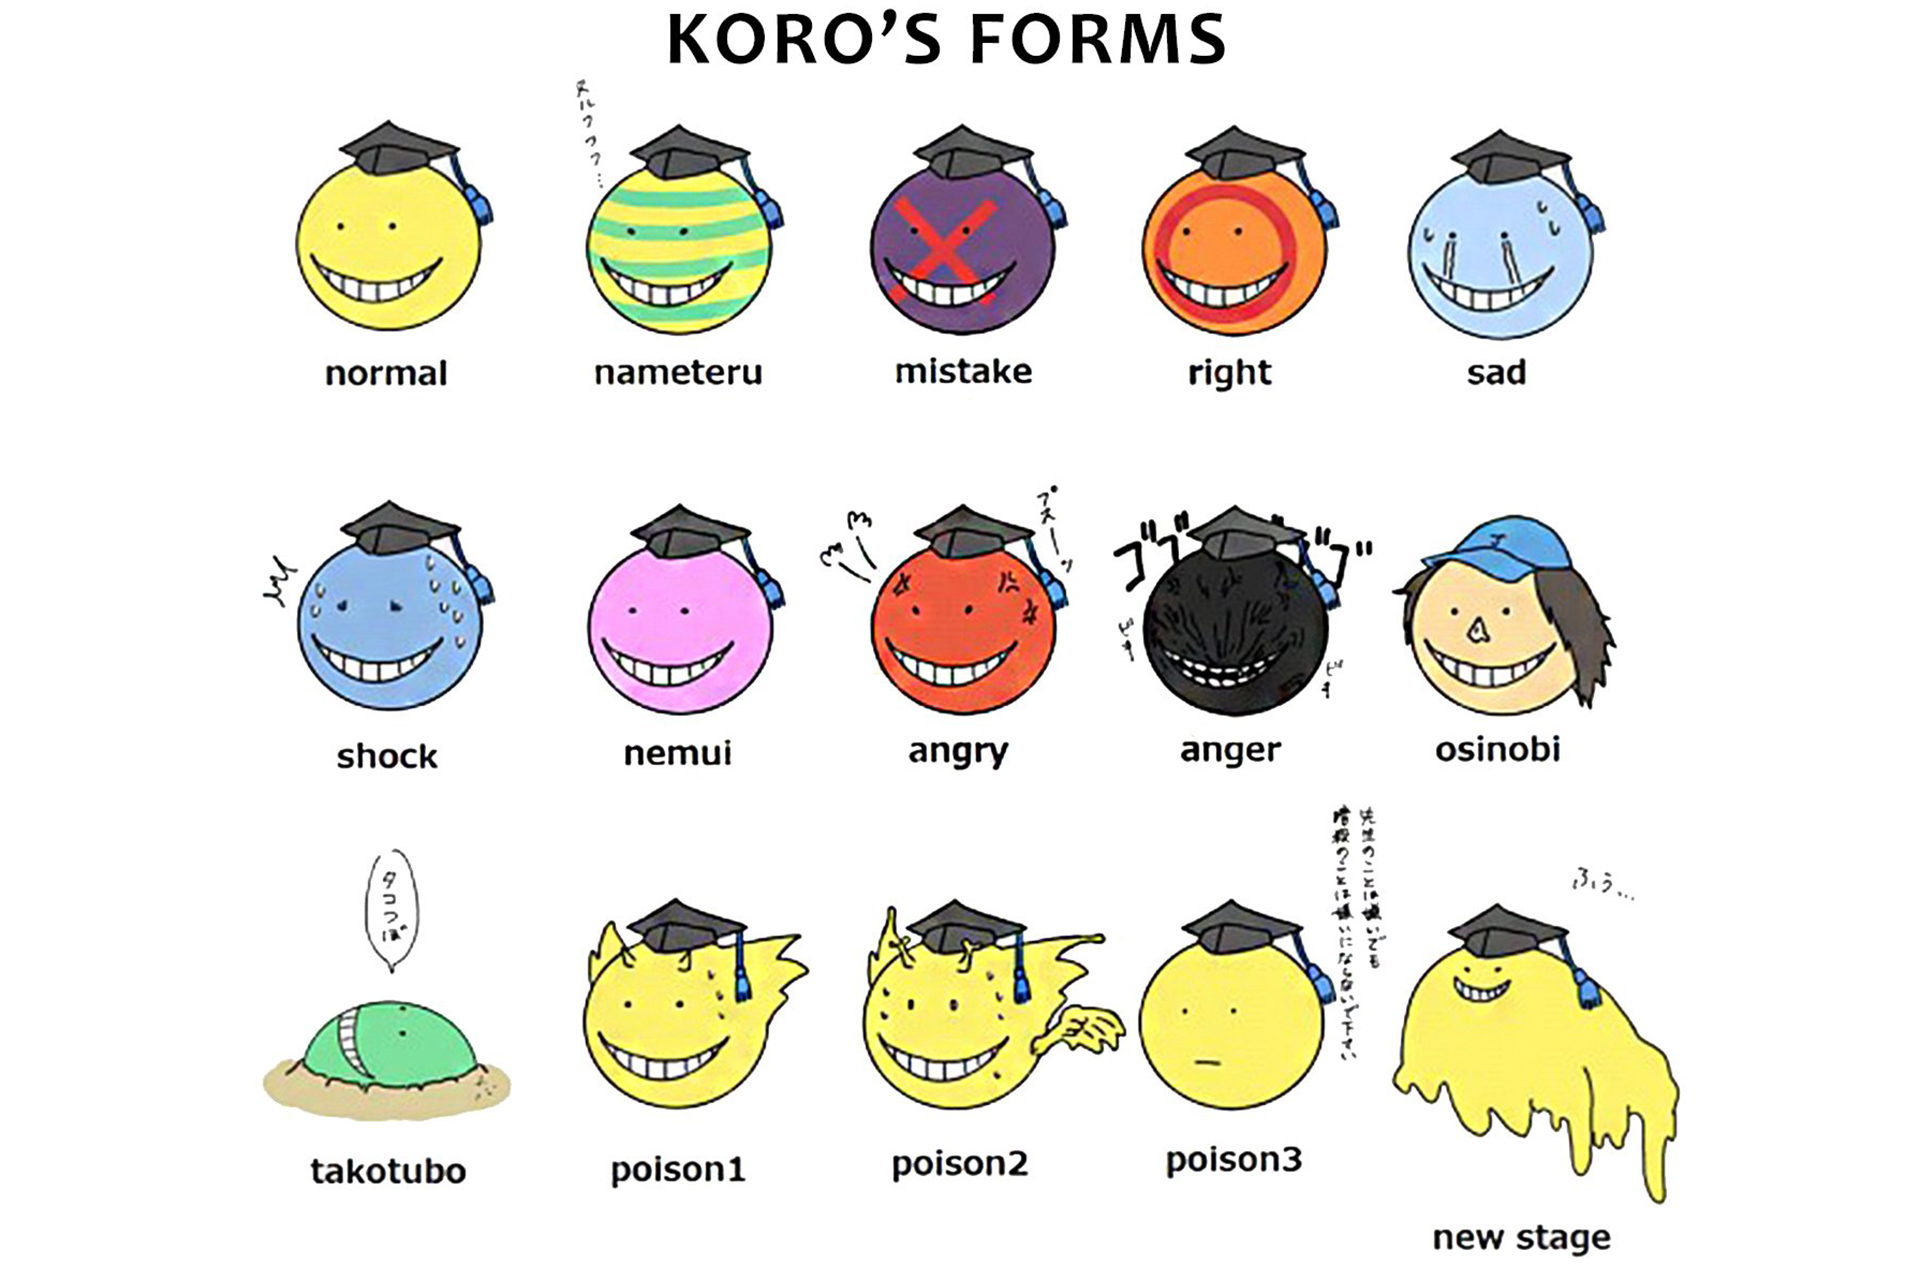 Koro-sensei's forms